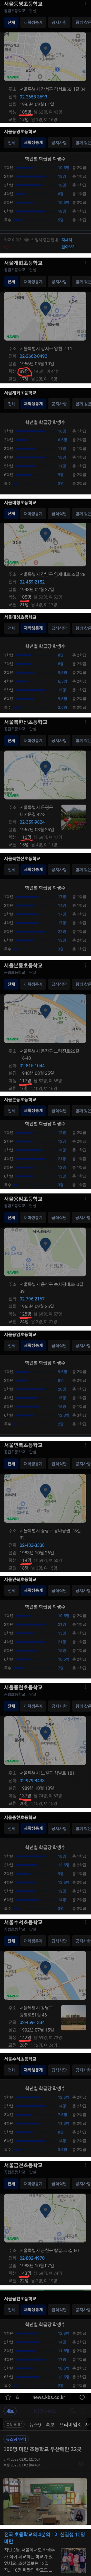 서울 초등학교 전교생 숫자